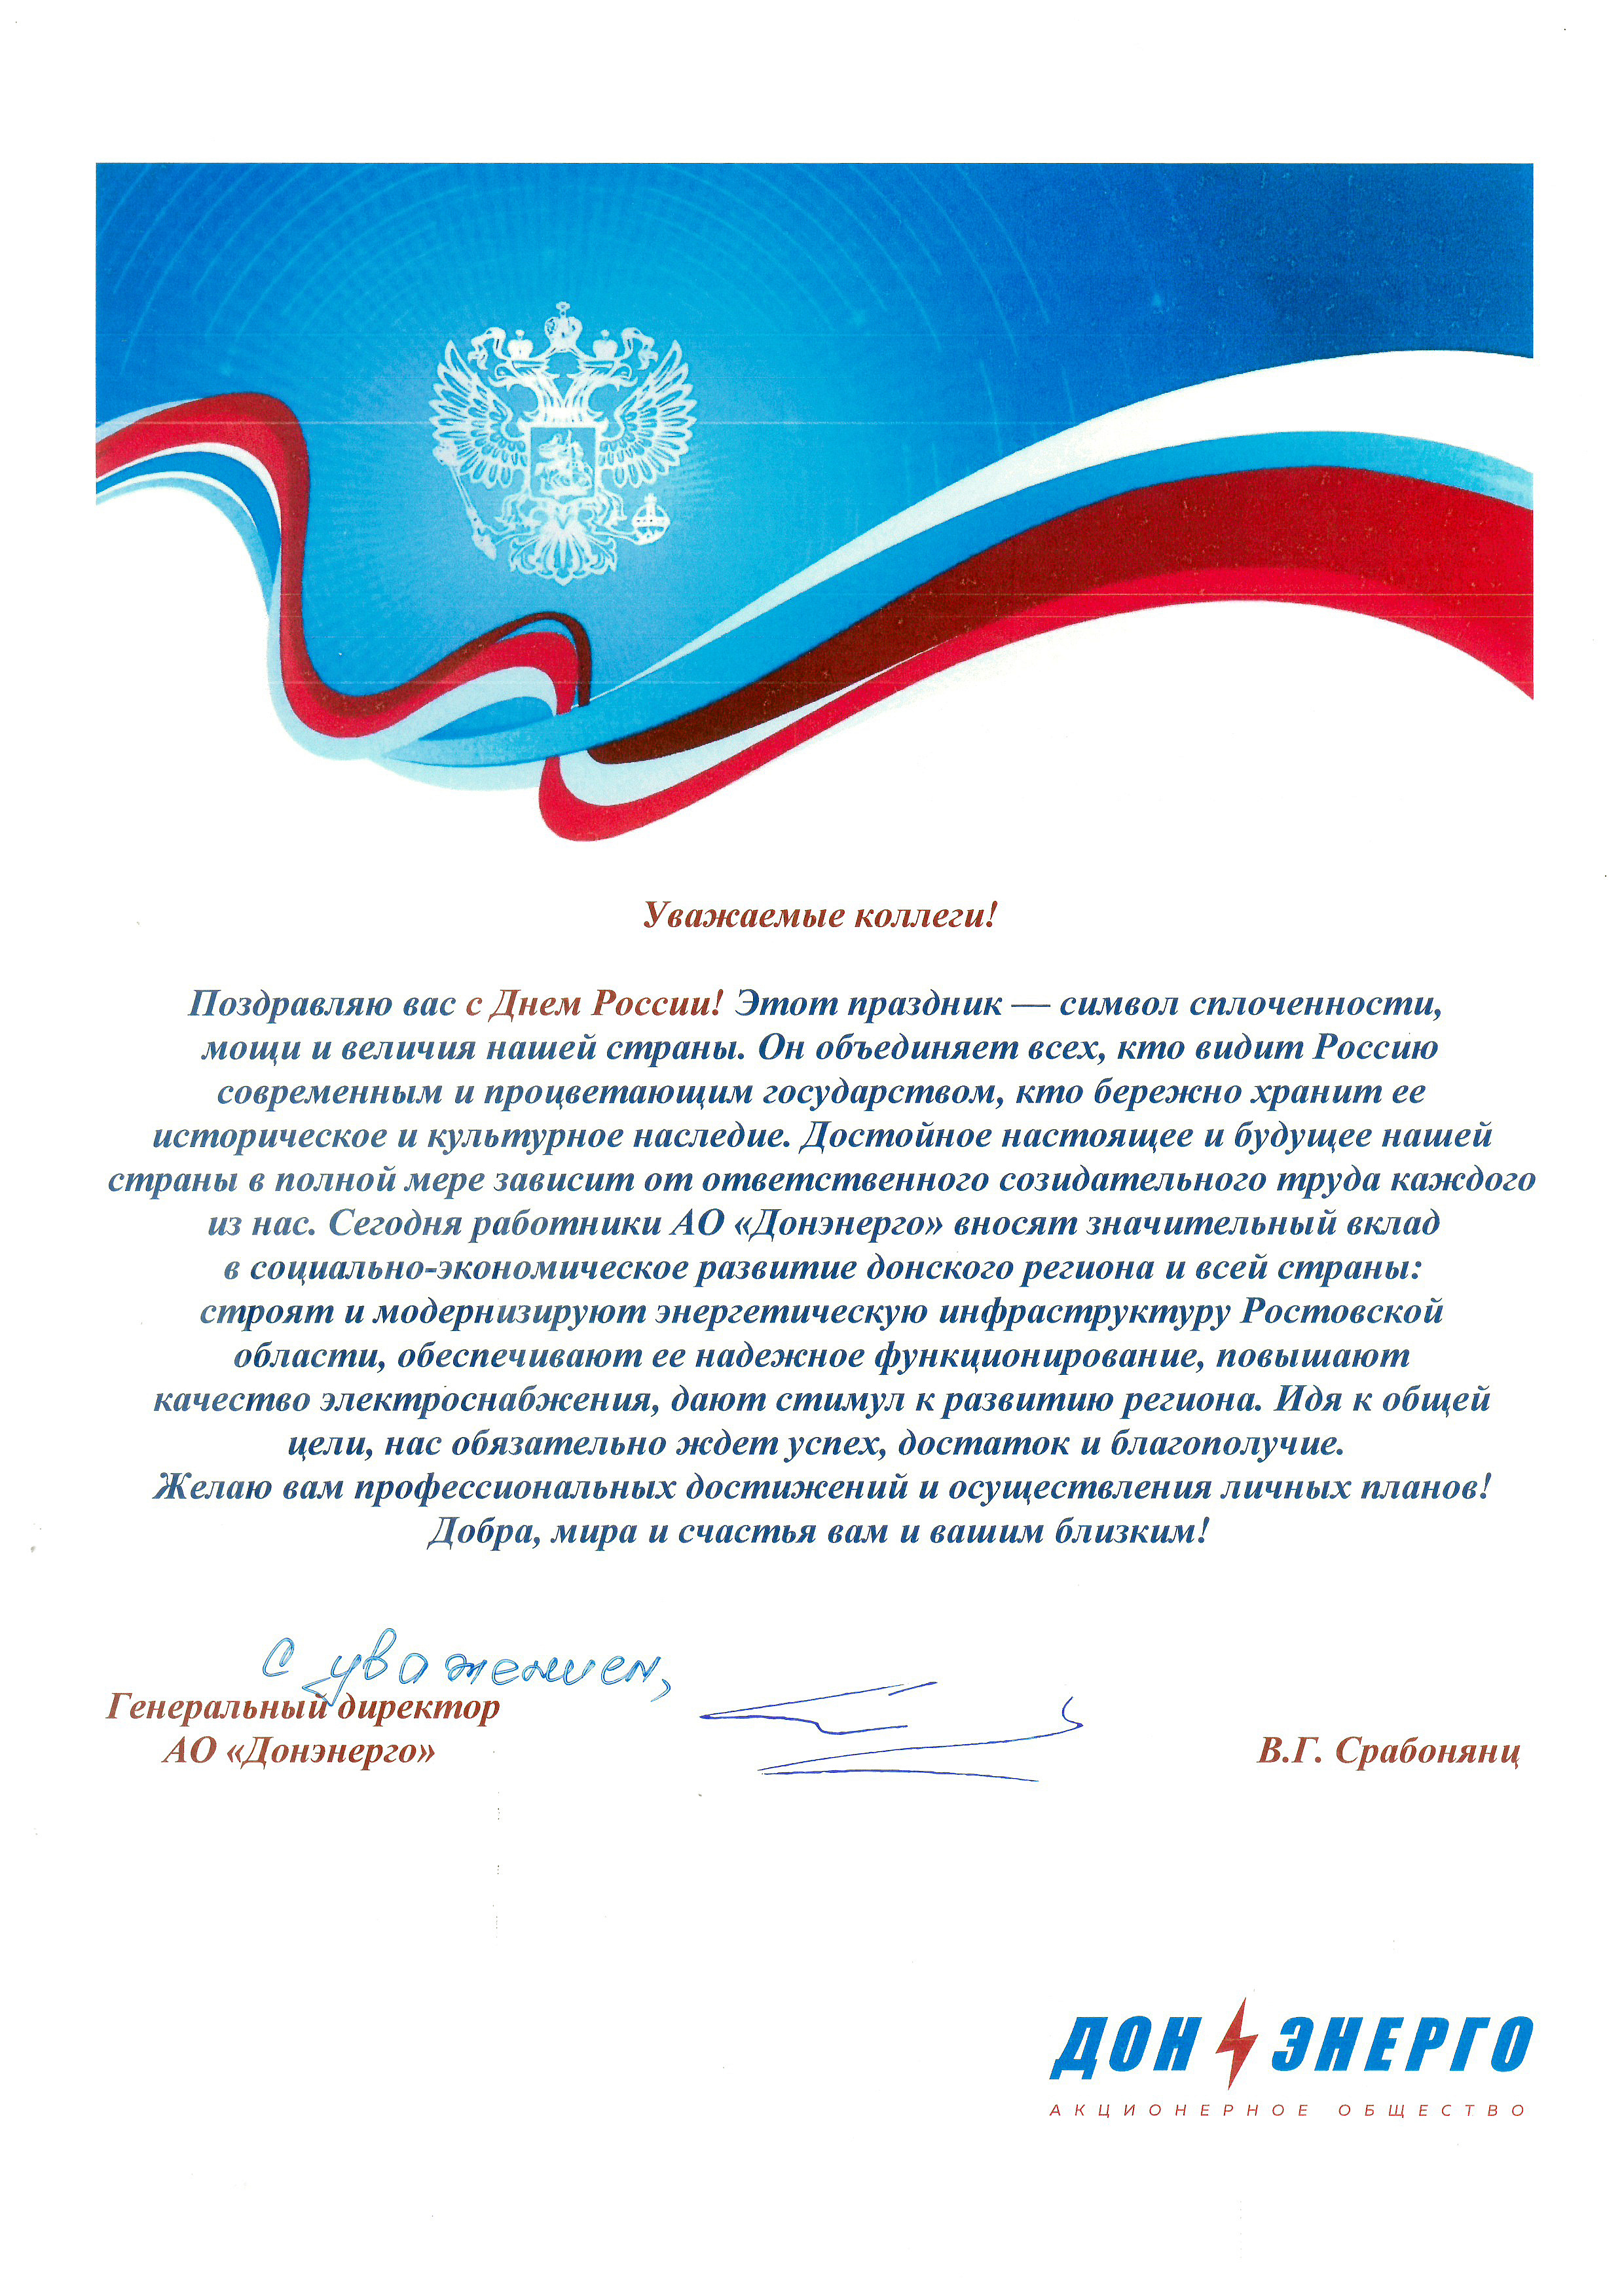 Поздравление генерального директора АО «Донэнерго» В.Г. Срабонянц с Днём России